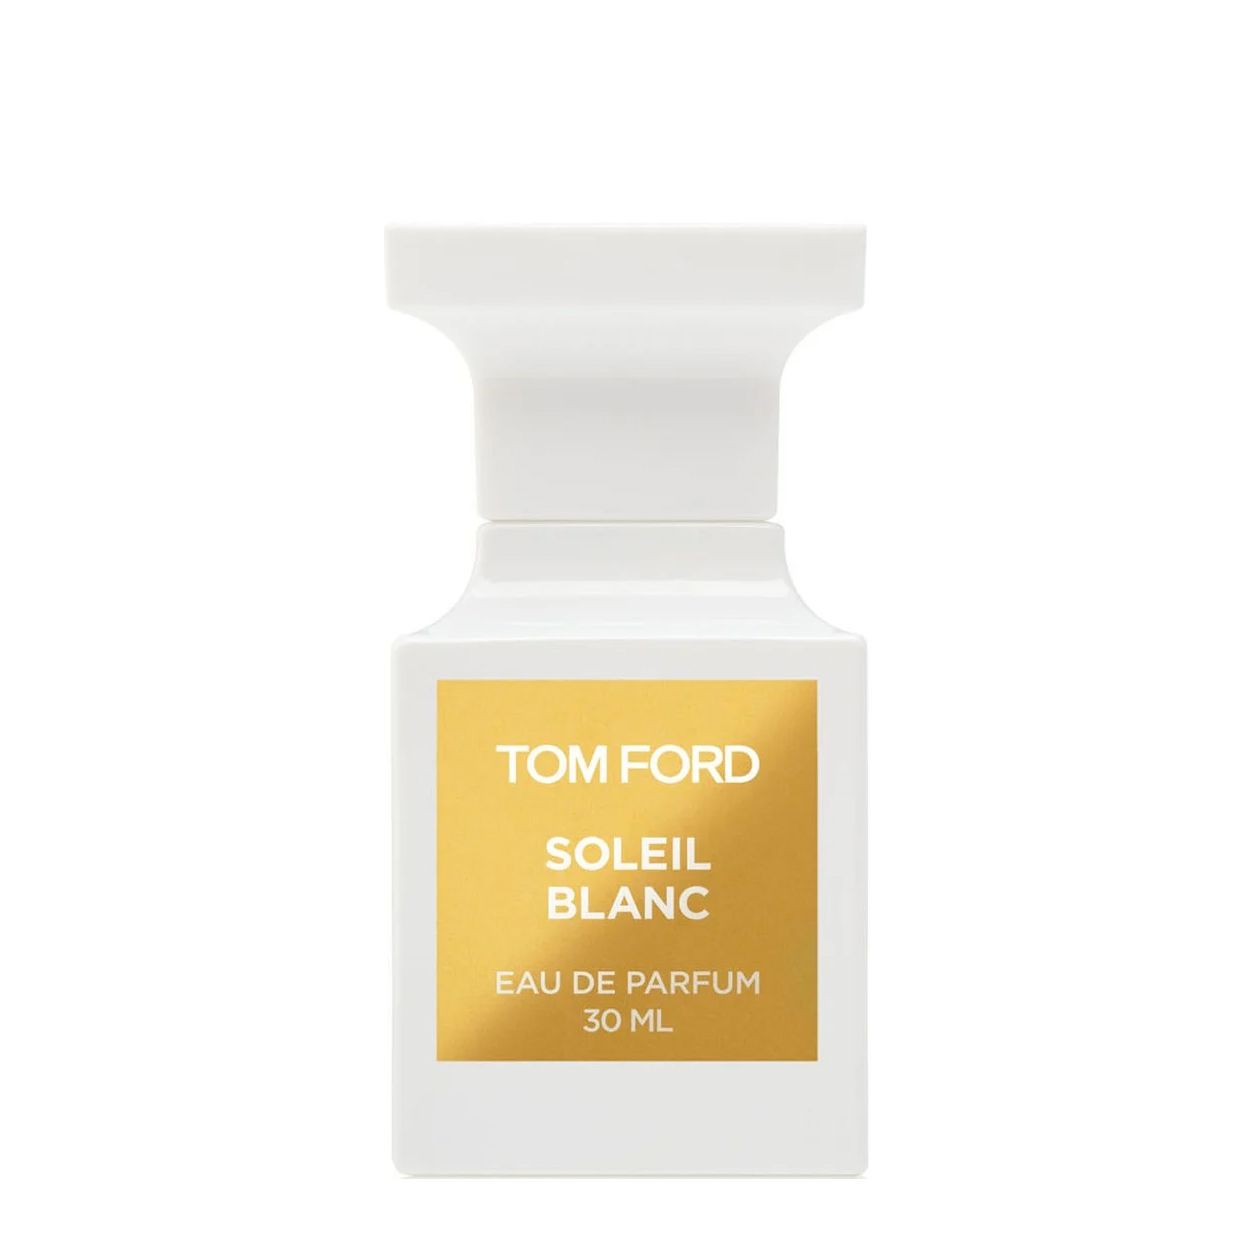 Вода парфюмерная Tom Ford Soleil Blanc, унисекс, 30 мл